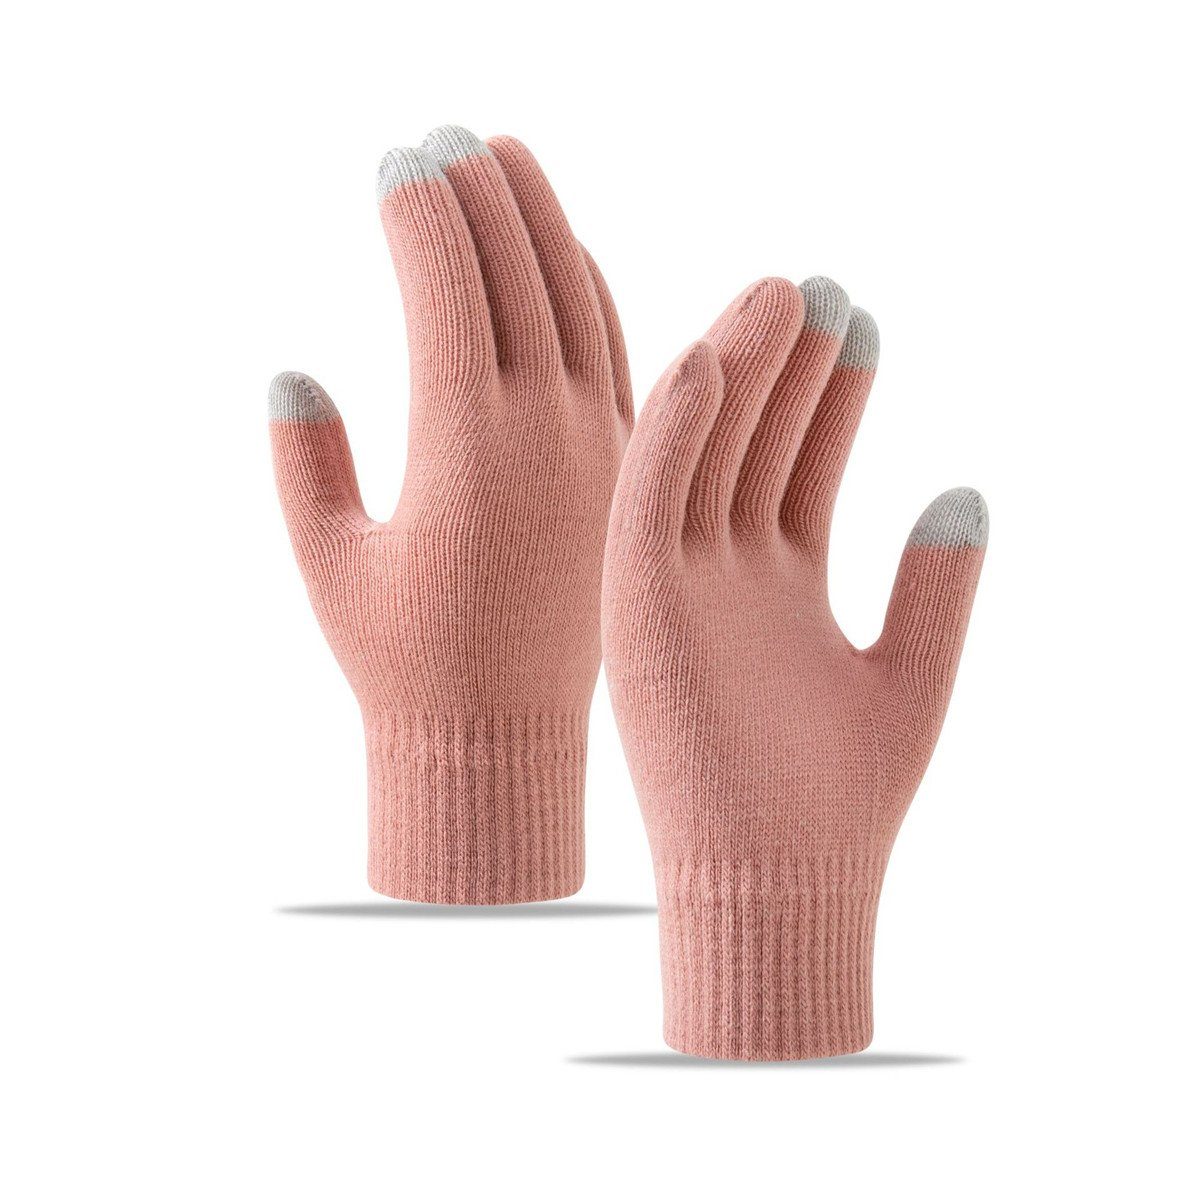 Die Sterne Trikot-Handschuhe Gestrickte Handschuhe mit Schneeflocken-, Strass- und Fleece-Stickerei Rosa